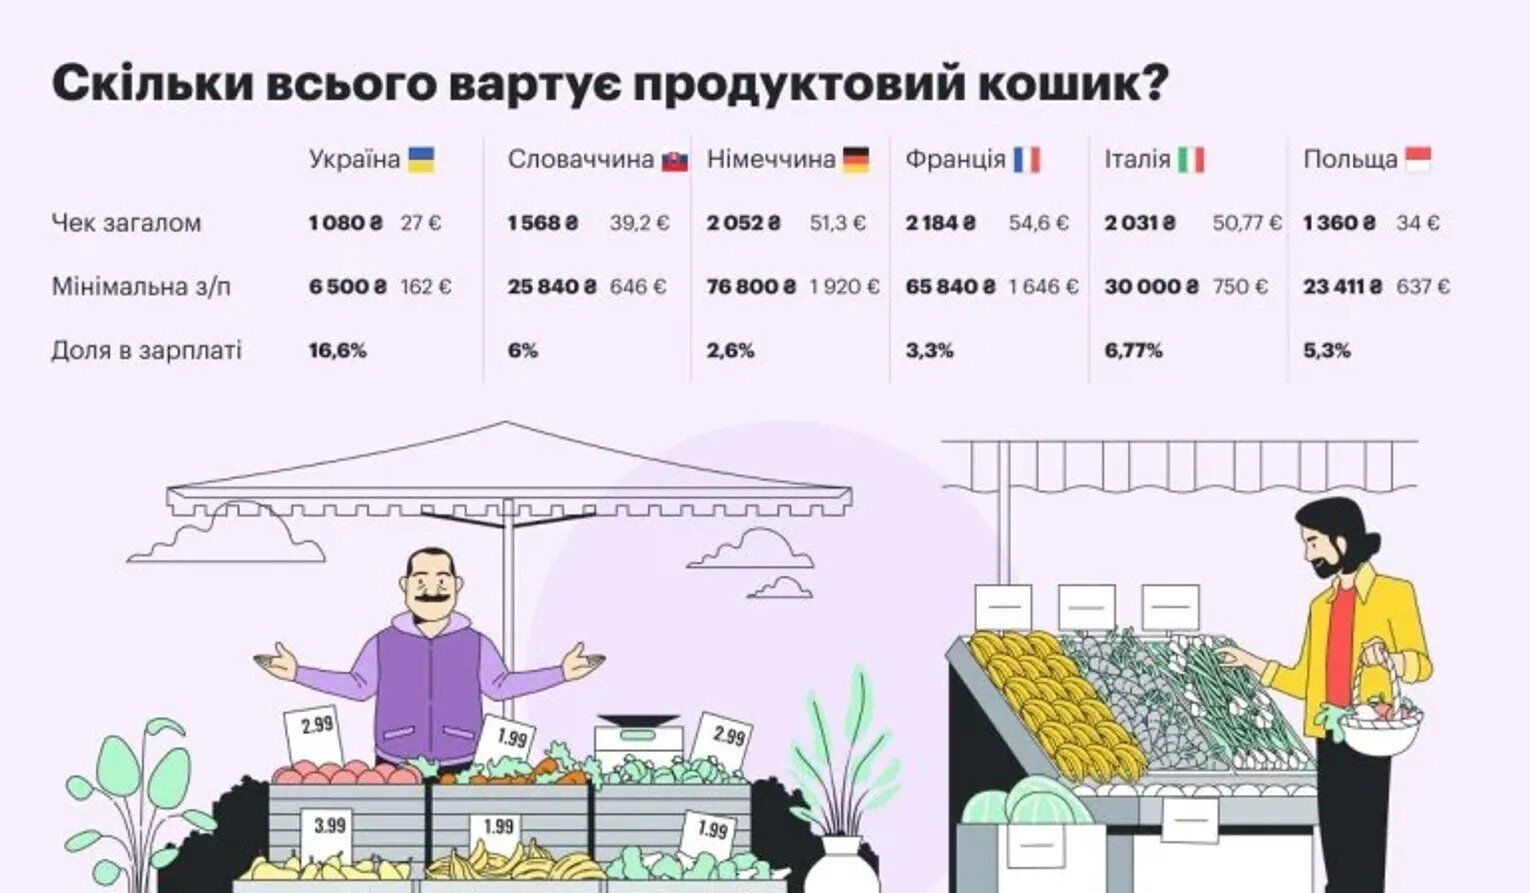 Сколько стоит продуктовая корзинка в странах ЕС и в Украине